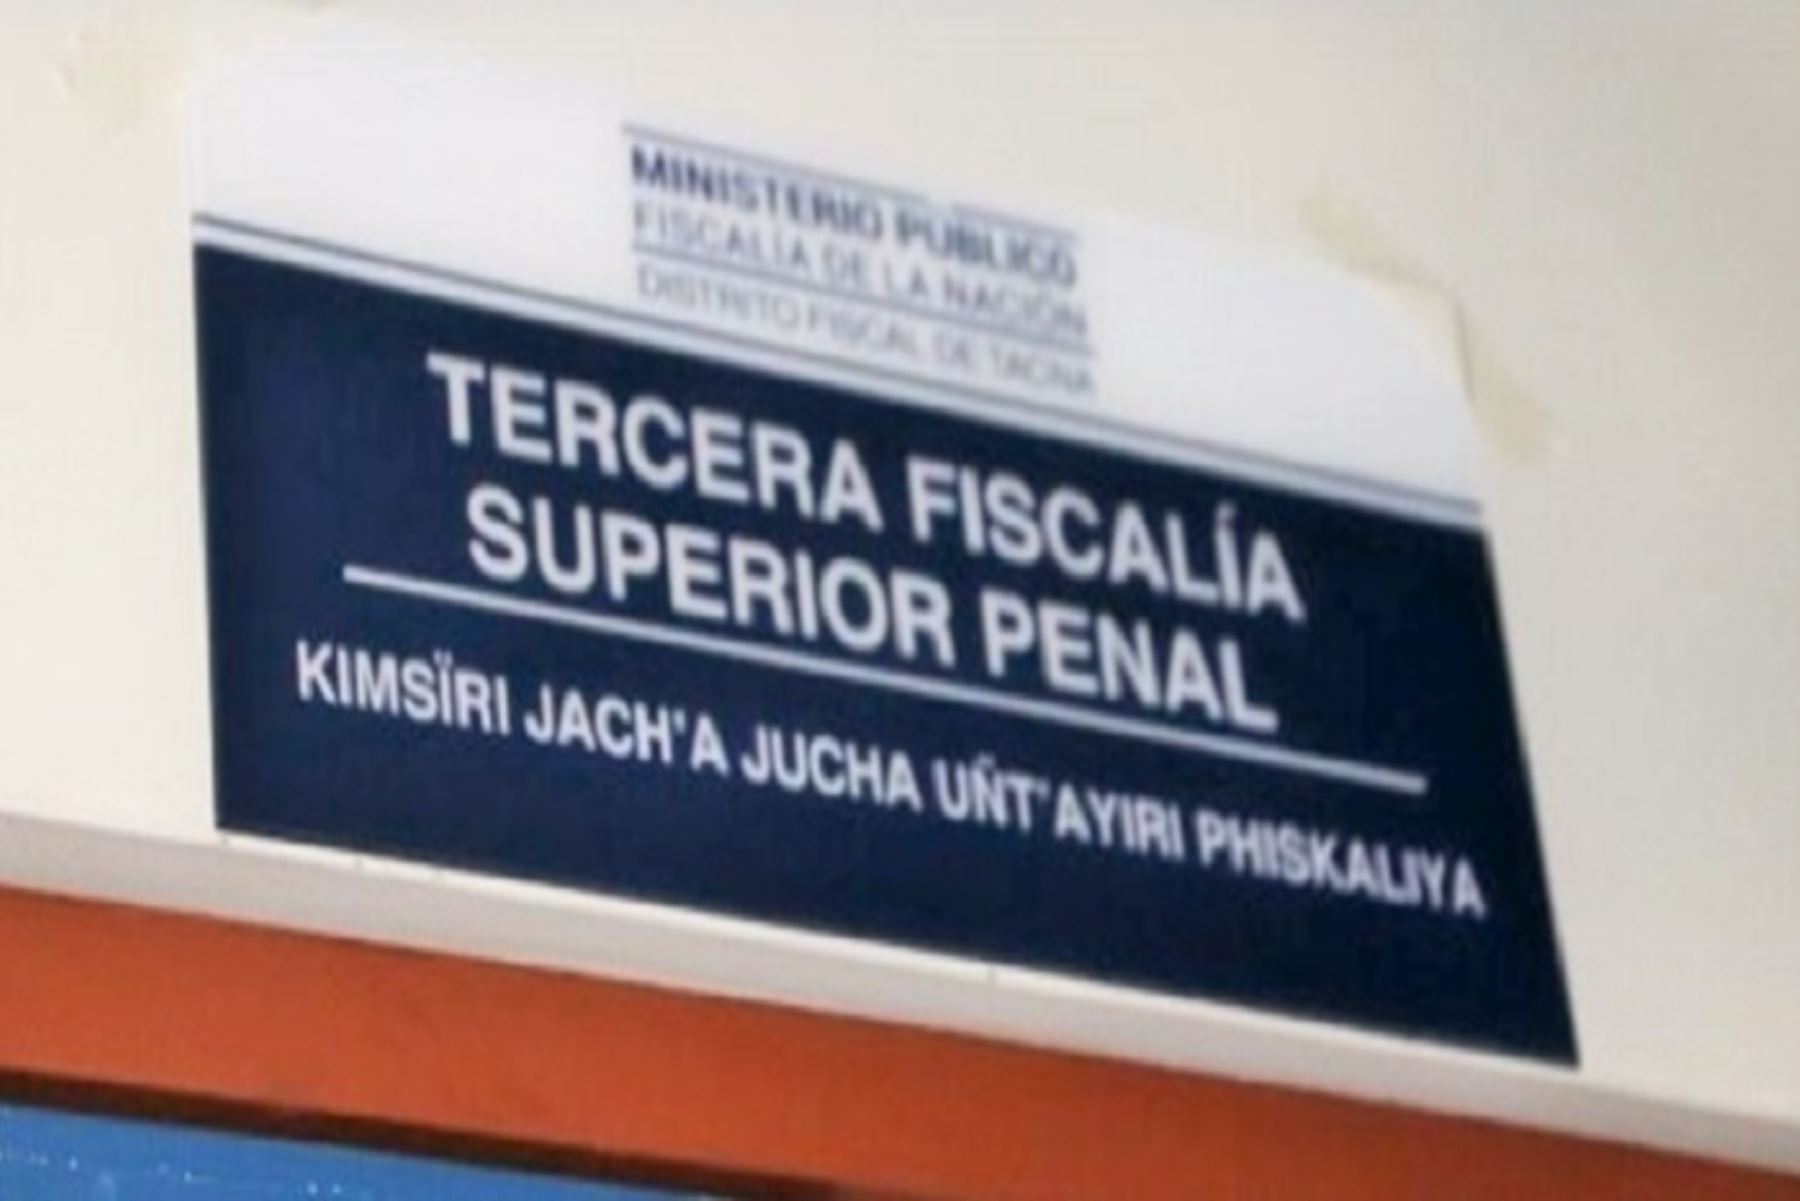 Las señalizaciones han sido colocadas en la sede central del Ministerio Público de Tacna, en la lengua originaria aimara.